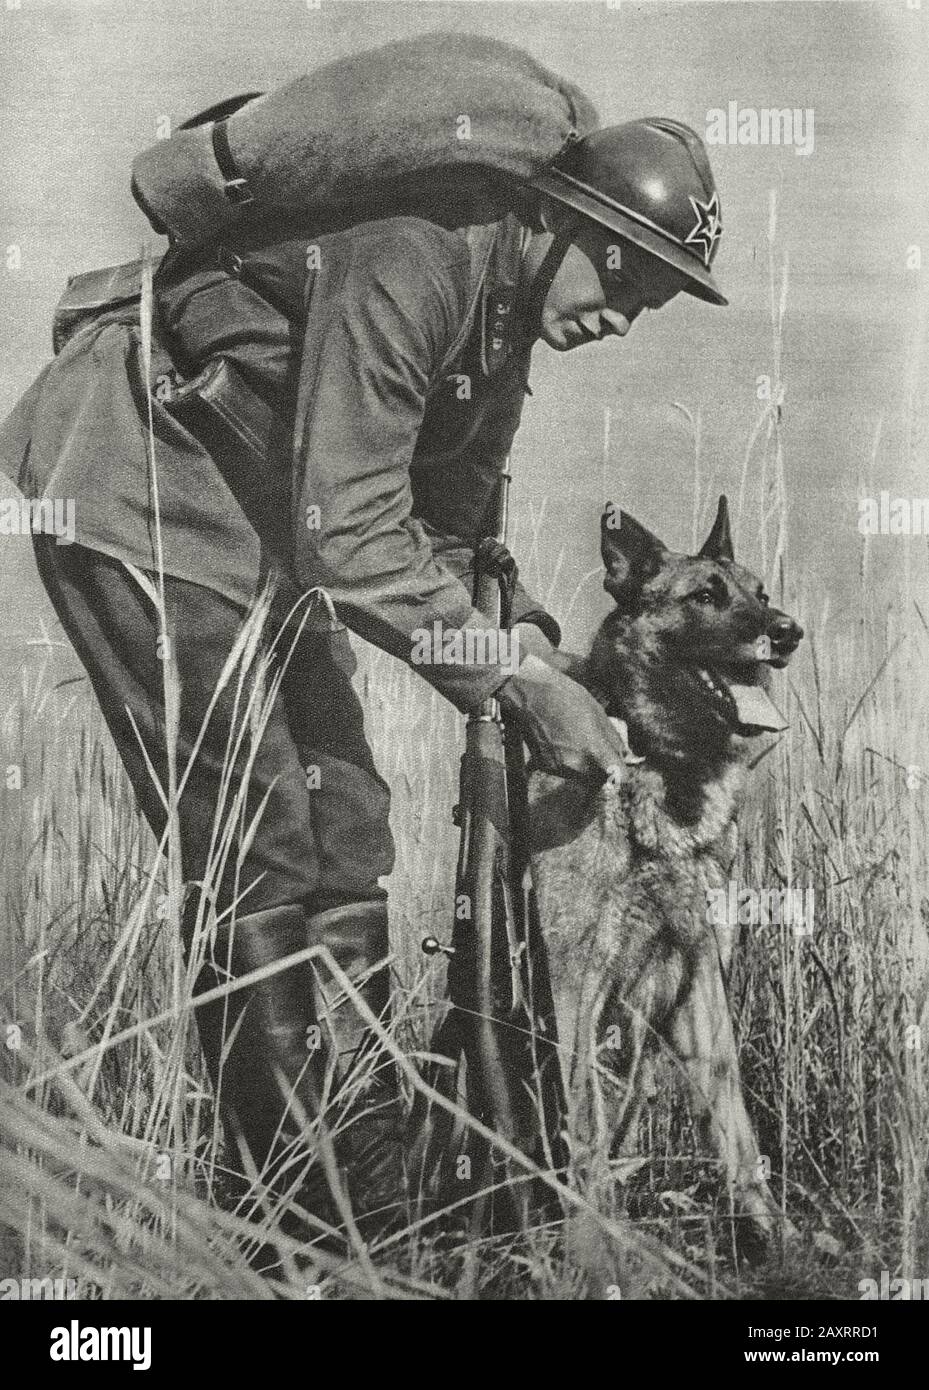 Rote Armee in den 1930er Jahren. Aus dem sowjetischen Propagandabuch von 1937. Signalmann mit Hund Stockfoto